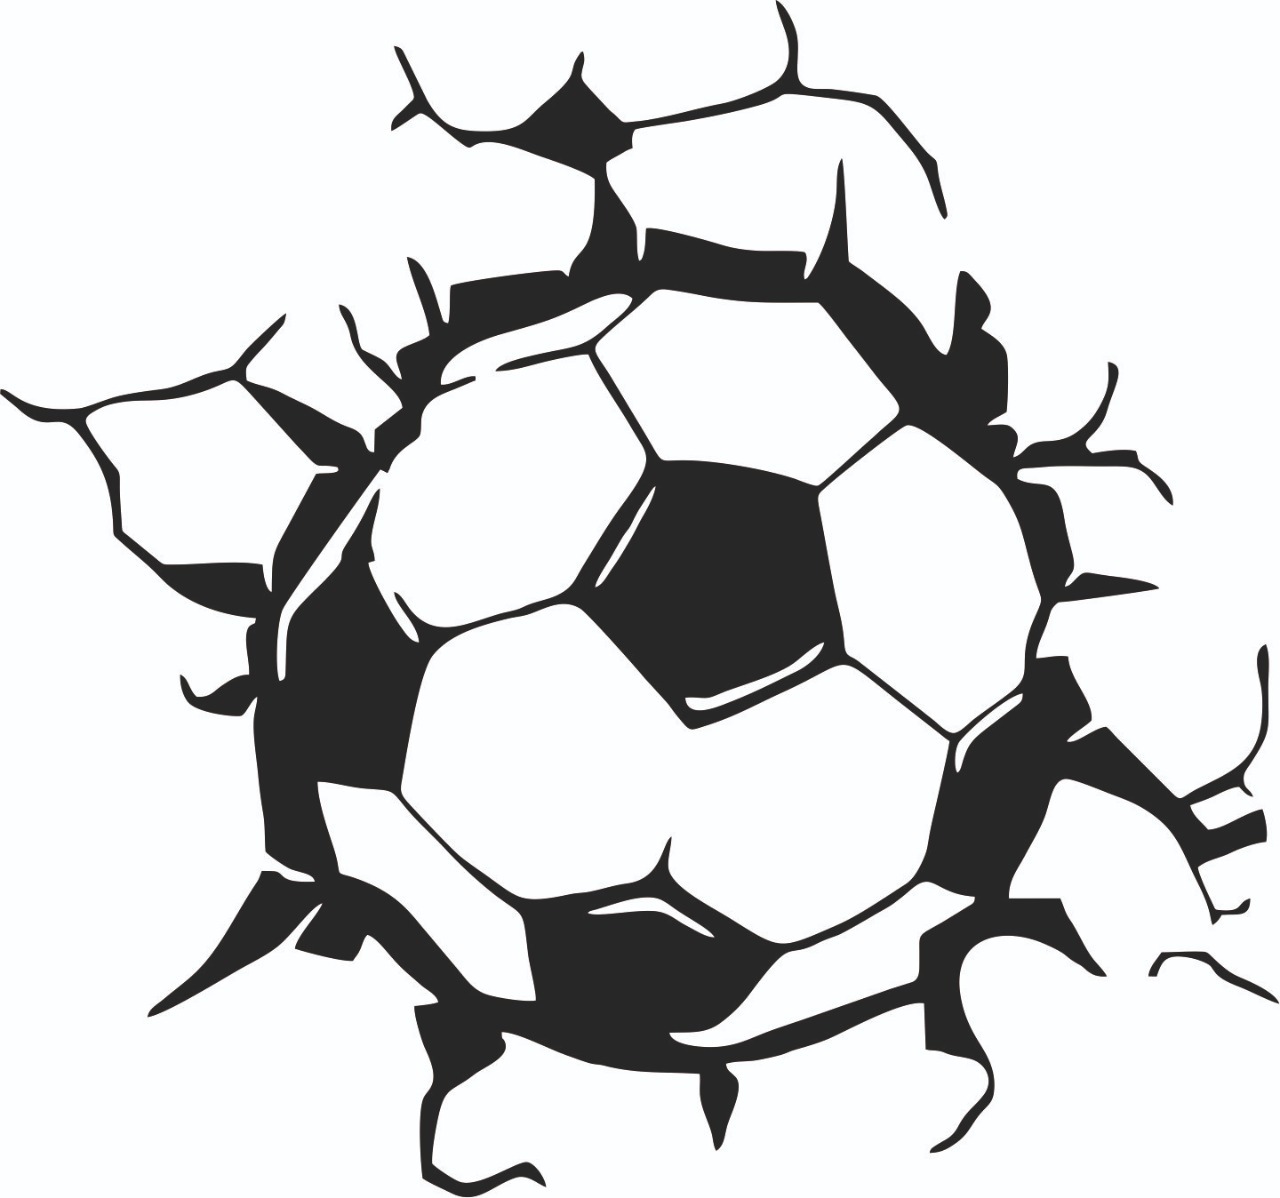 Наклейка футбольный мяч